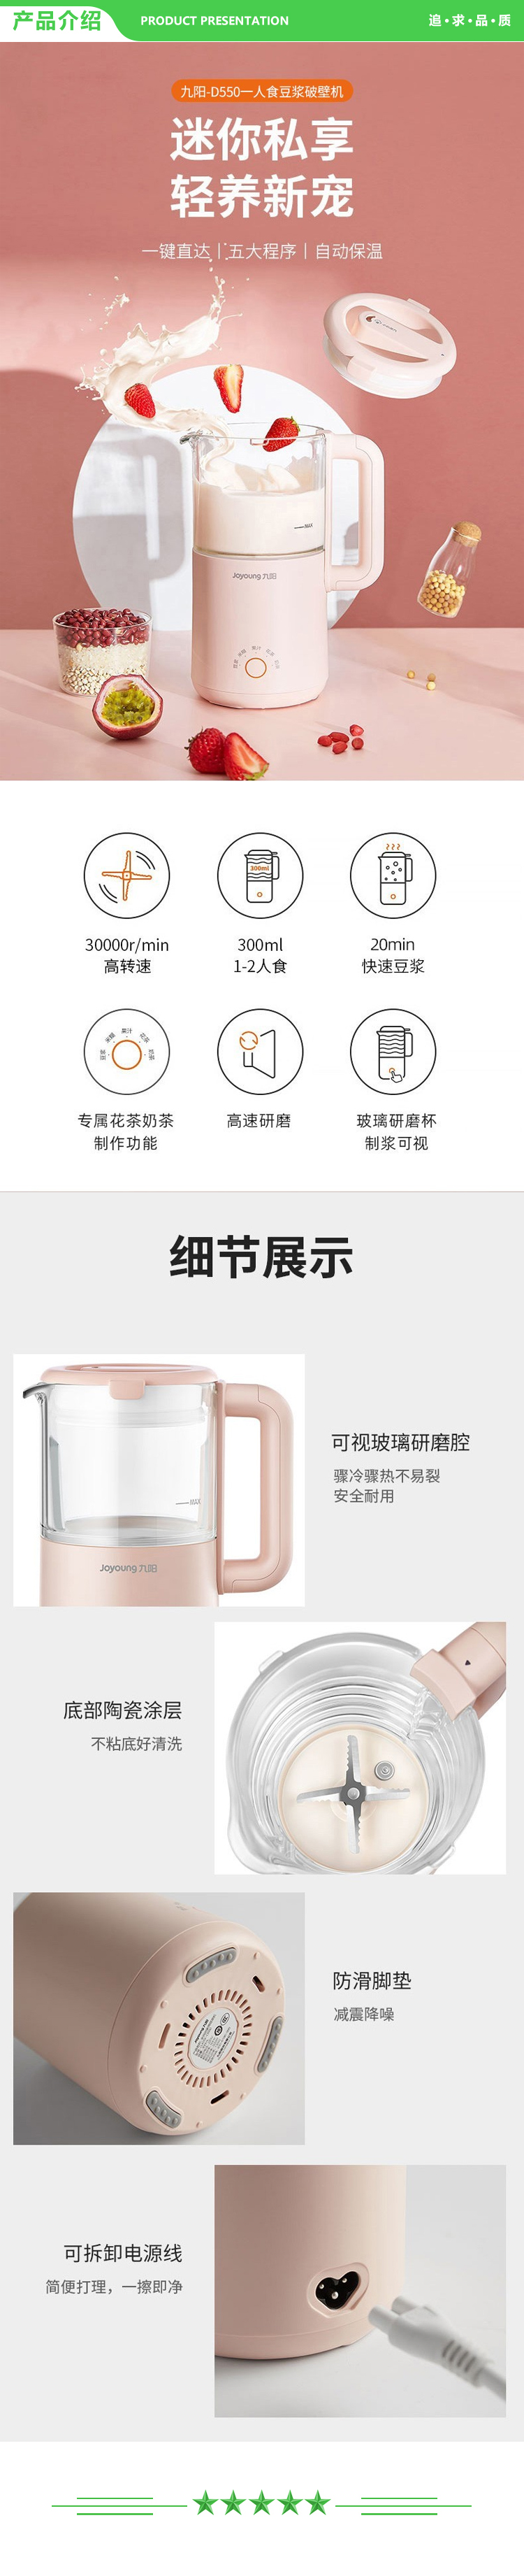 九阳 Joyoung D550 破壁机迷你豆浆机家用智能加热全自动小型破壁料理机免过滤300ml 粉色.jpg